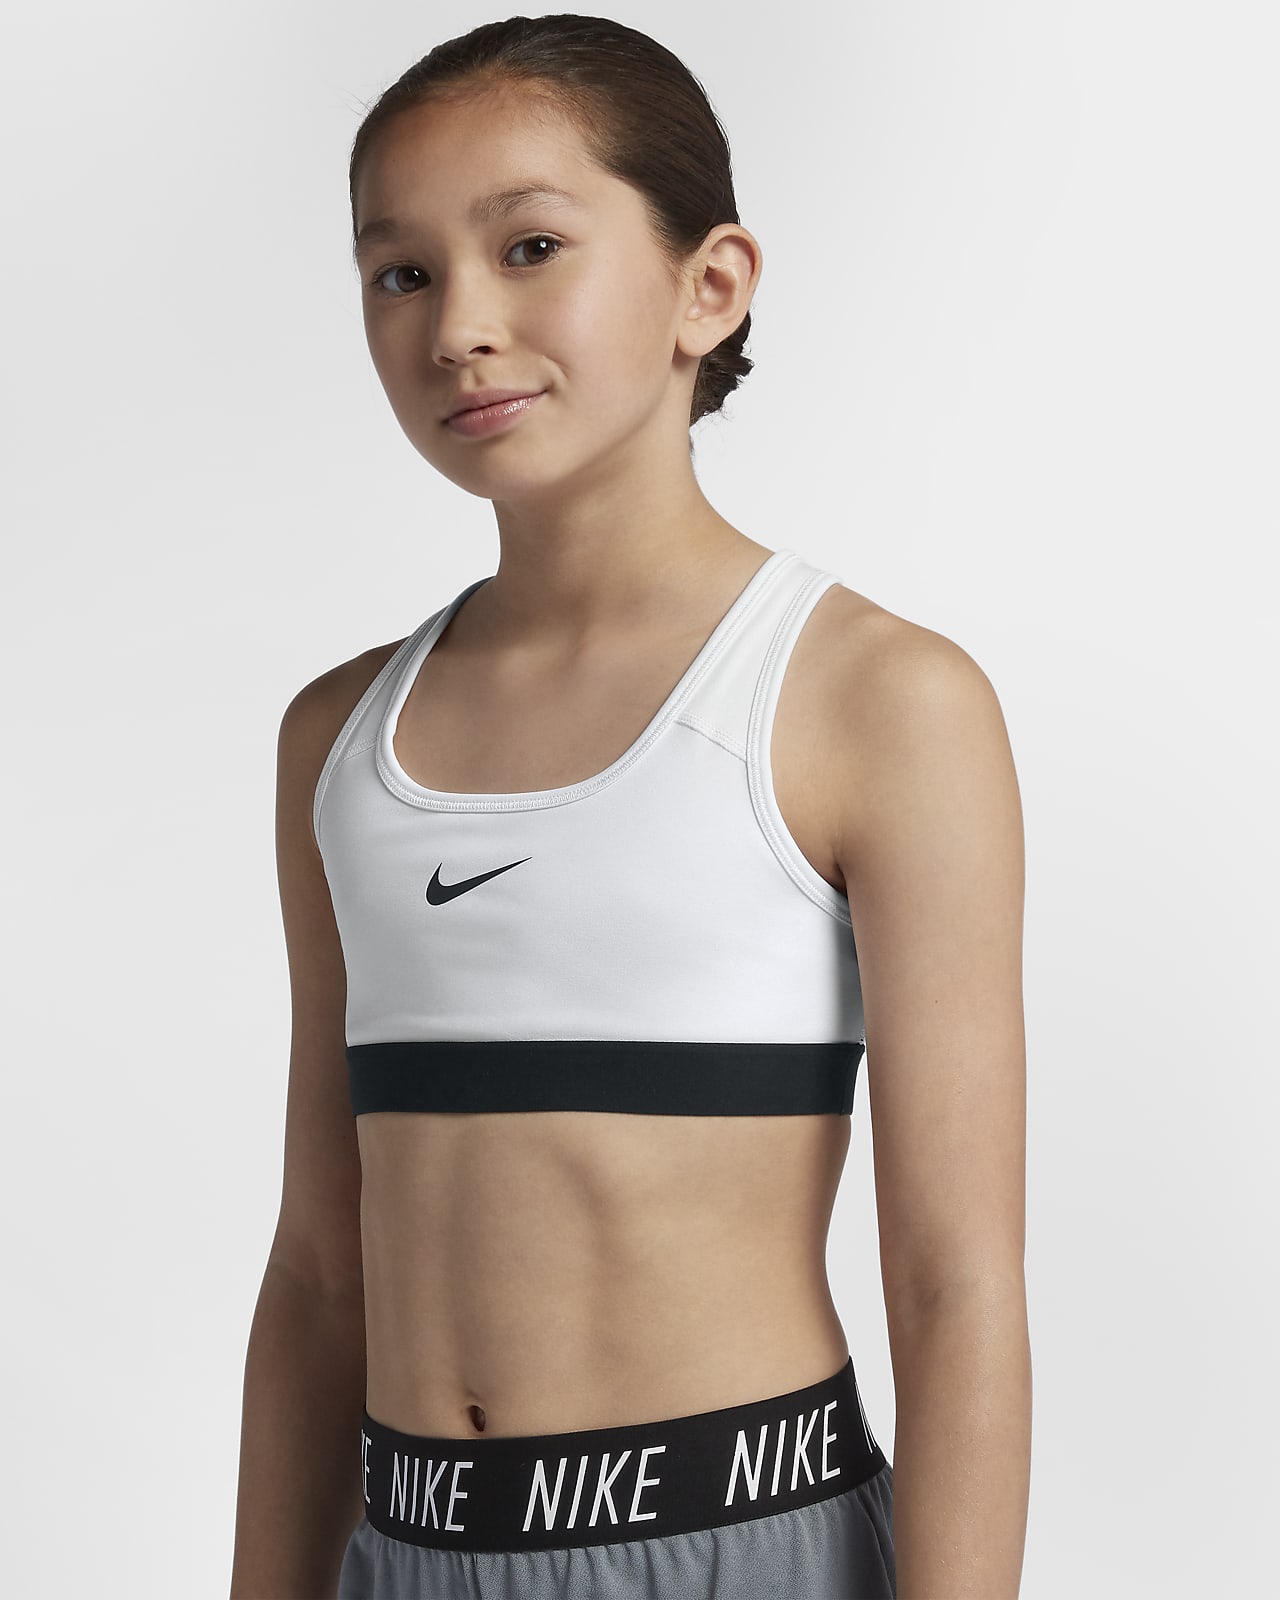 Спортивная девочка 14 лет. Nike Pro 11 years. 12 Years Nike Pro. Спортивный бра для девочек 14 лет. Бра для девочек 12 лет спортивные.